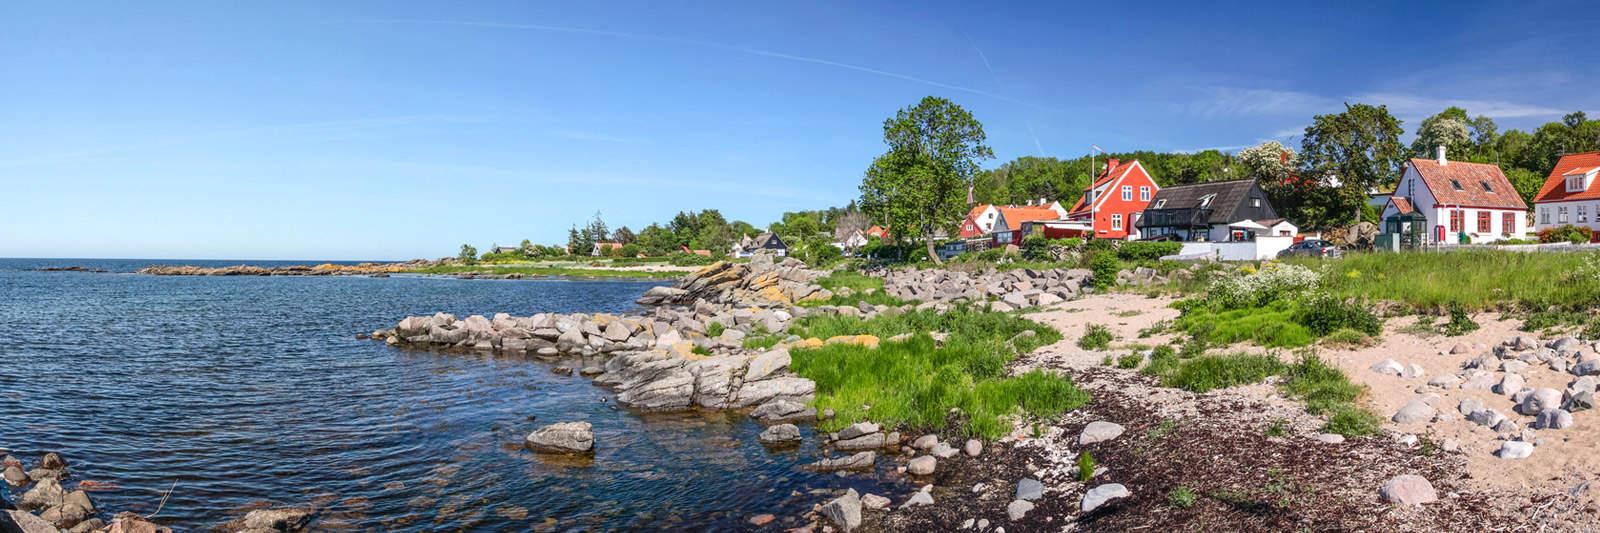 21 Ferienwohnungen und Ferienhäuser auf Røsnæs - tourist-online.de